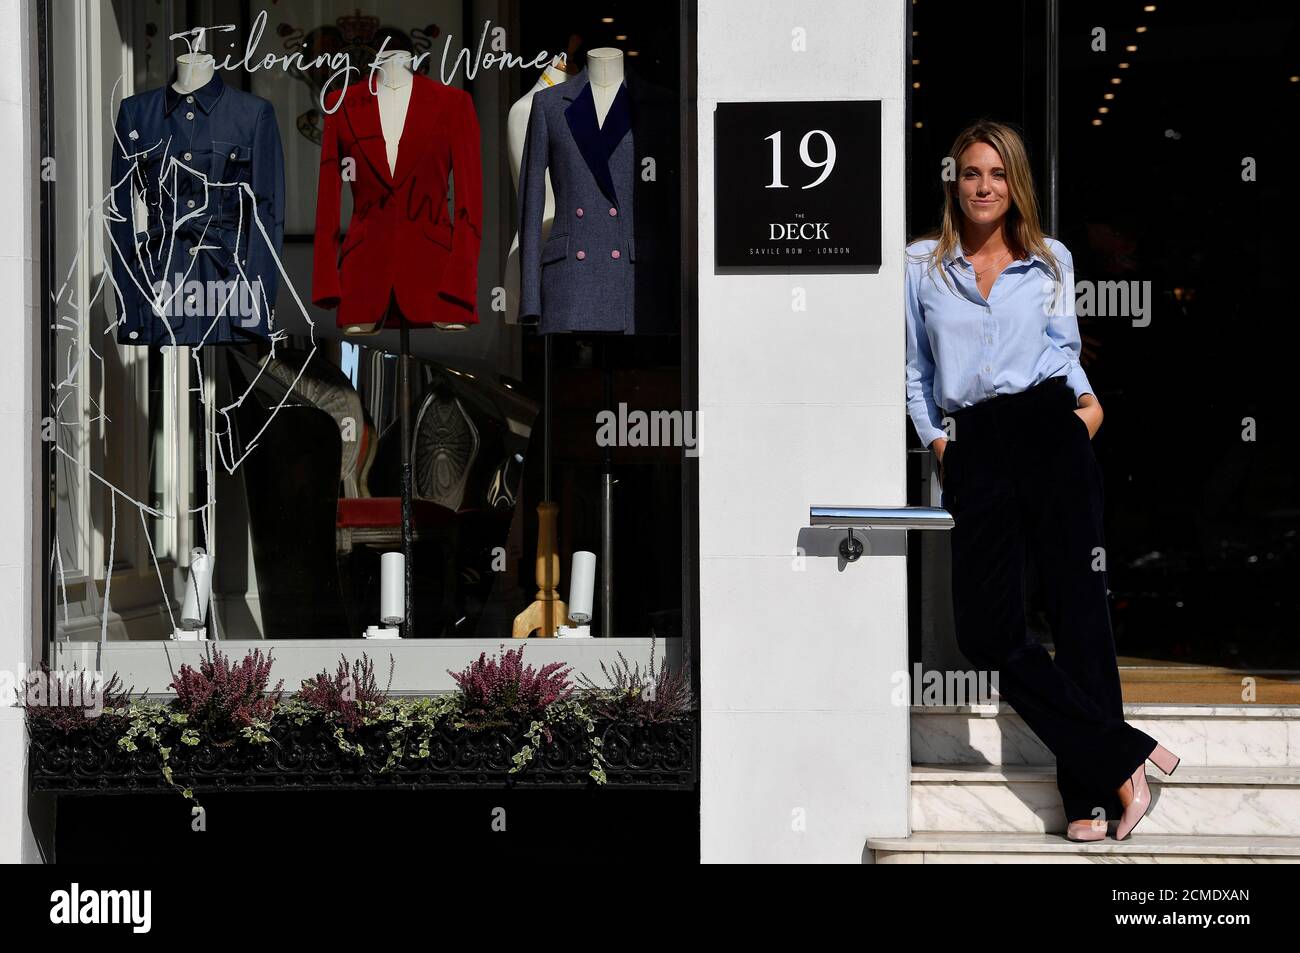 Daisy Knatchbull, fondatrice de The Deck, se tient à l'extérieur de ses  nouveaux locaux sur Savile Row, le premier magasin de vêtements  exclusivement réservé aux femmes à ouvrir dans la célèbre rue,